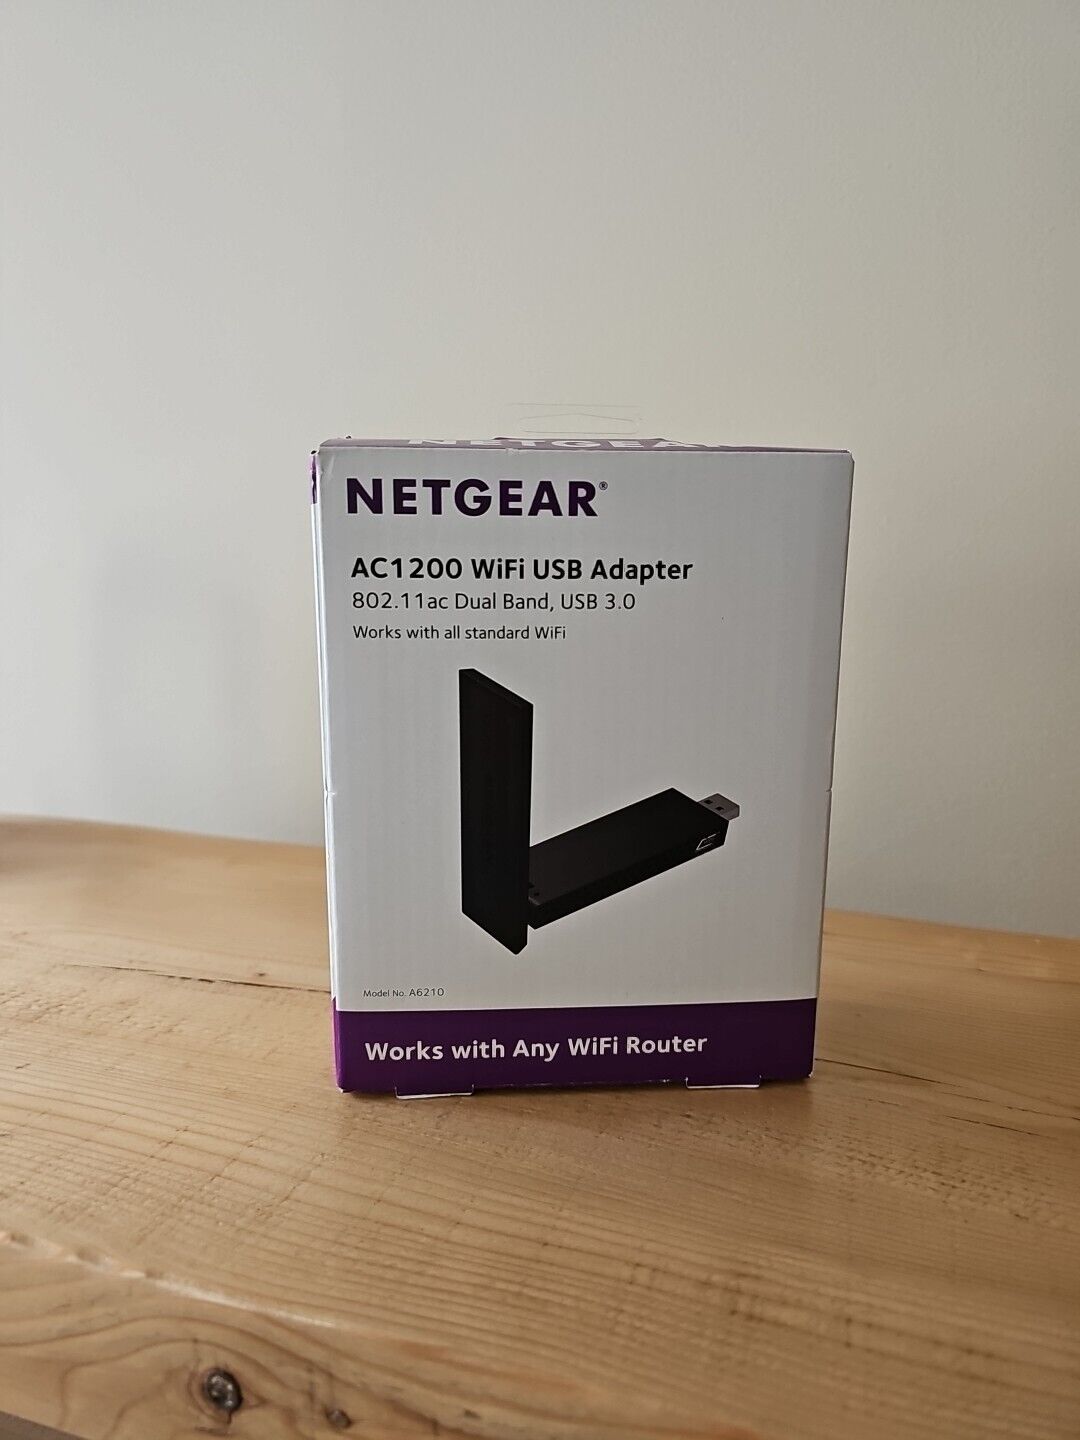 NETGEAR AC1200 USB 3.0 Wi-Fi Adapter - A6210-10000S